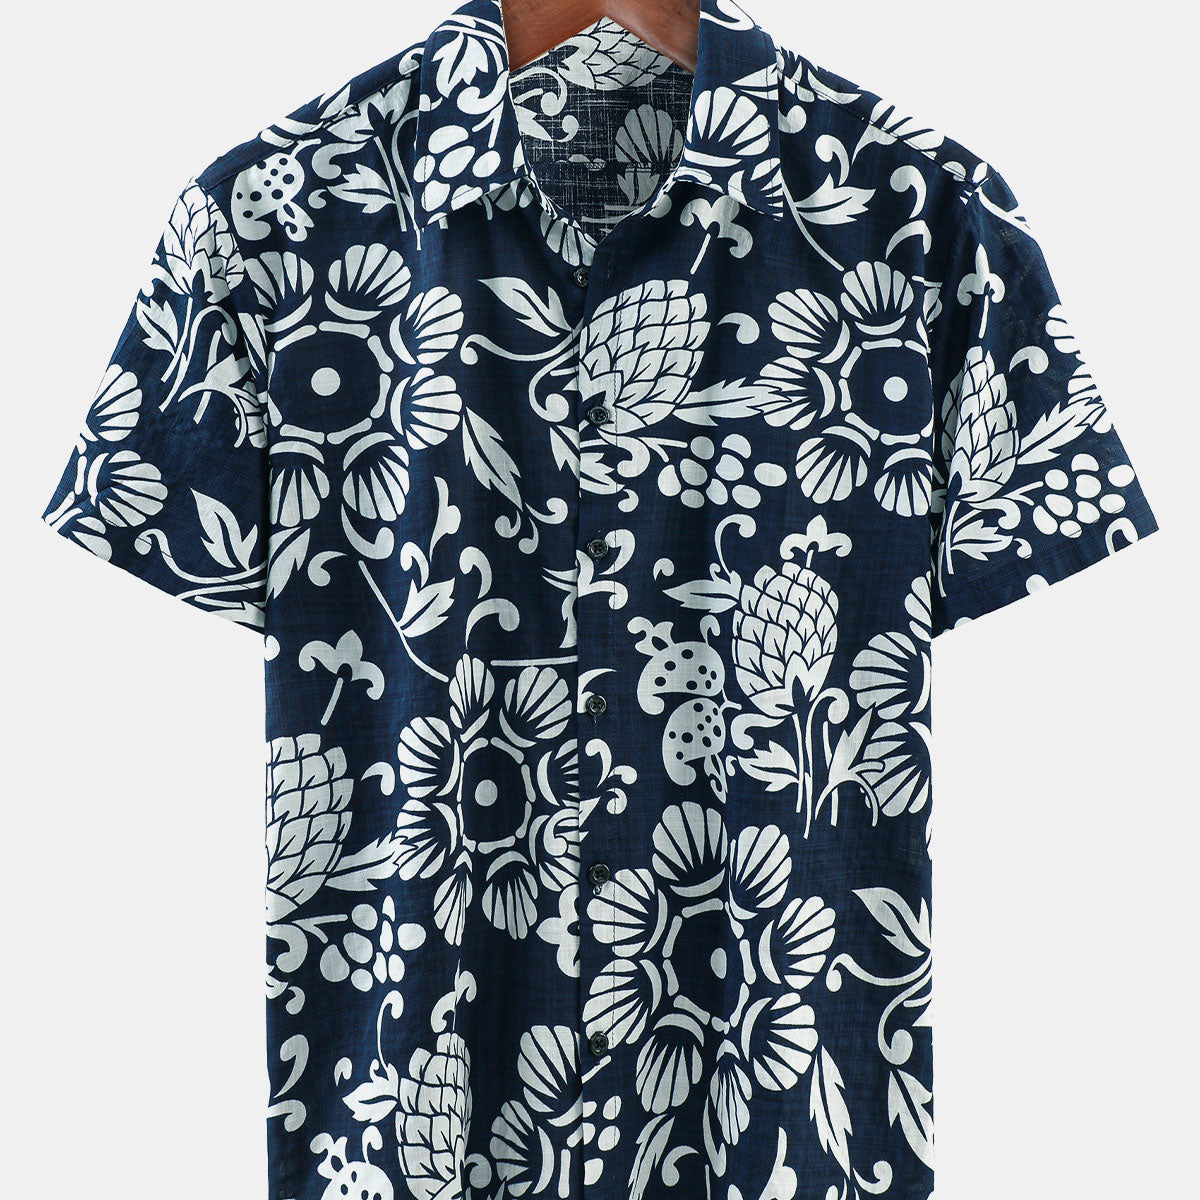 Men's Hawaiian Summer Floral Cotton Button up Short Sleeve Shirt